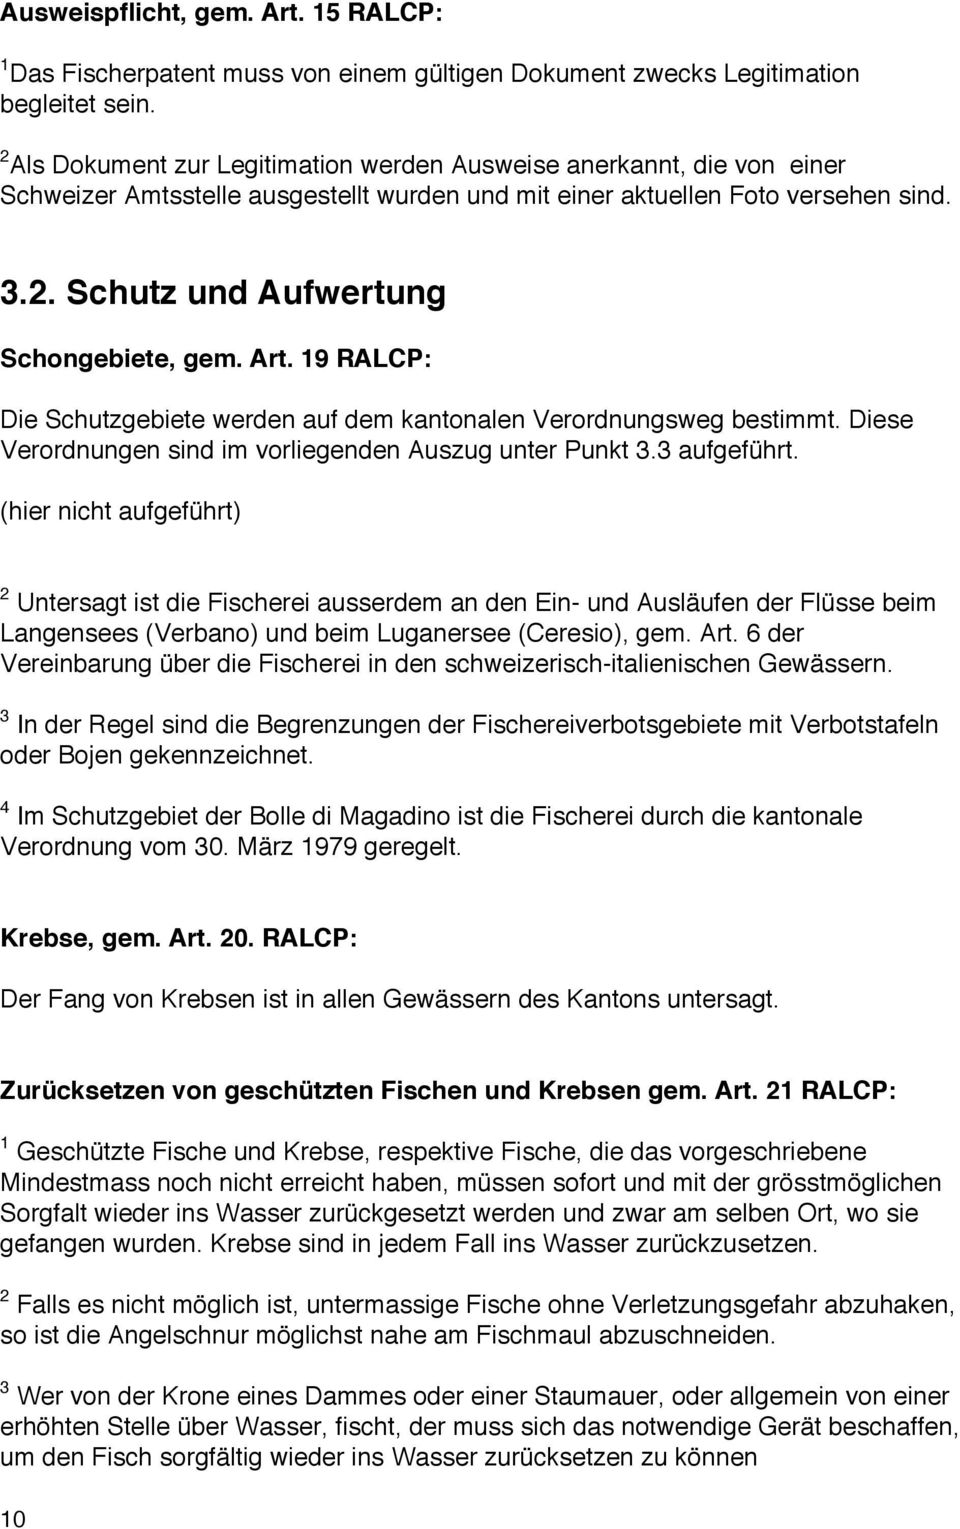 Art. 19 RALCP: Die Schutzgebiete werden auf dem kantonalen Verordnungsweg bestimmt. Diese Verordnungen sind im vorliegenden Auszug unter Punkt 3.3 aufgeführt.